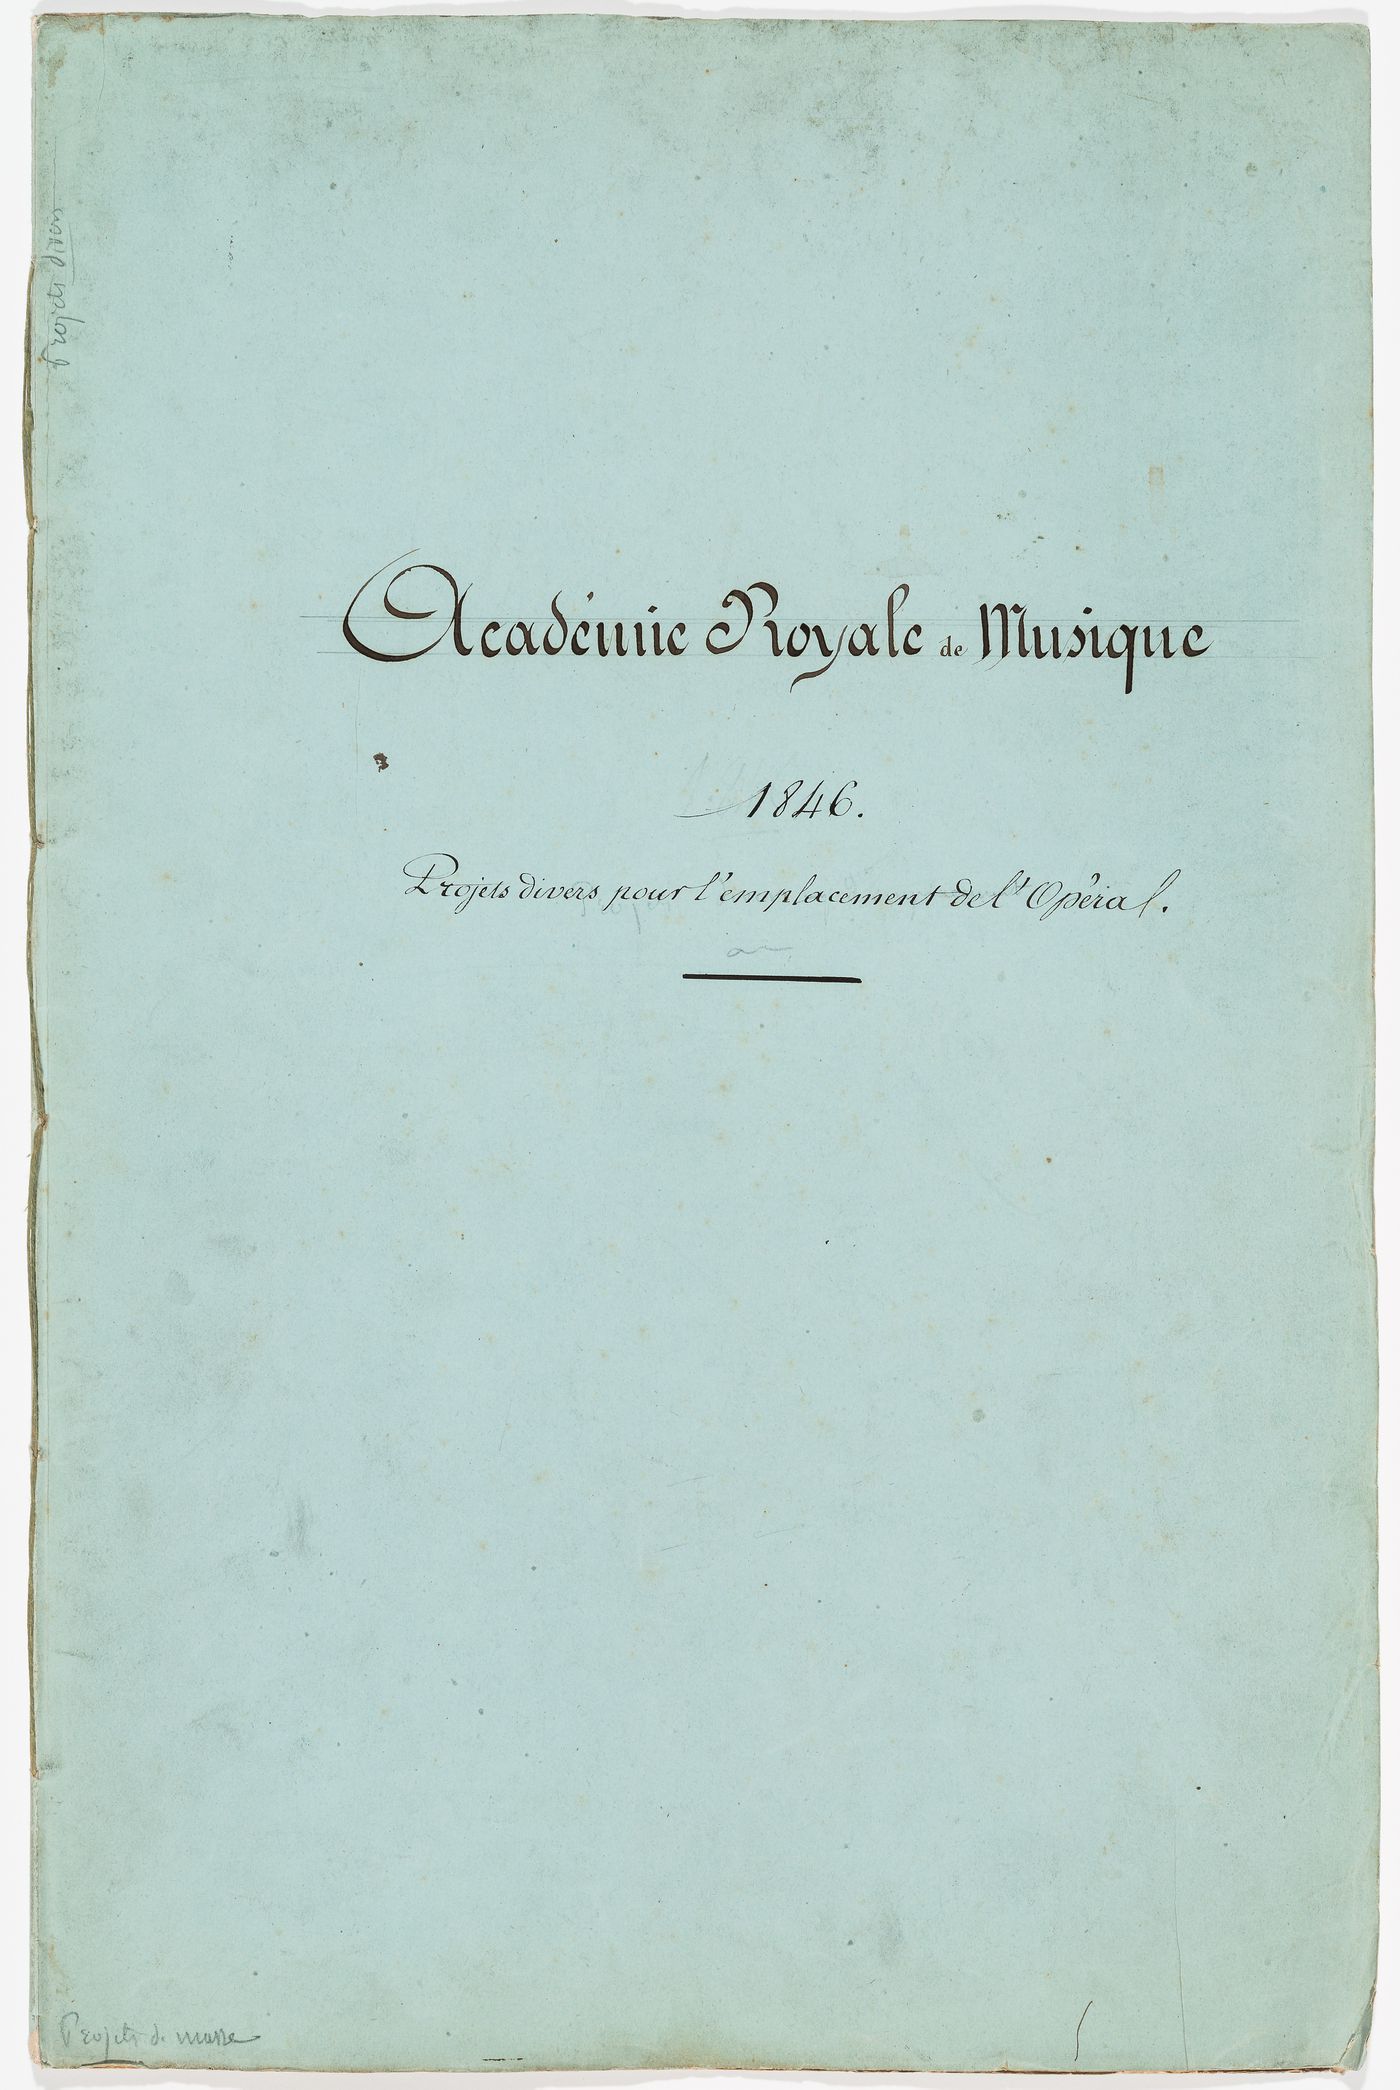 Académie Royale de Musique / 1846. / Projets divers pour l'emplacement de l'Opéra